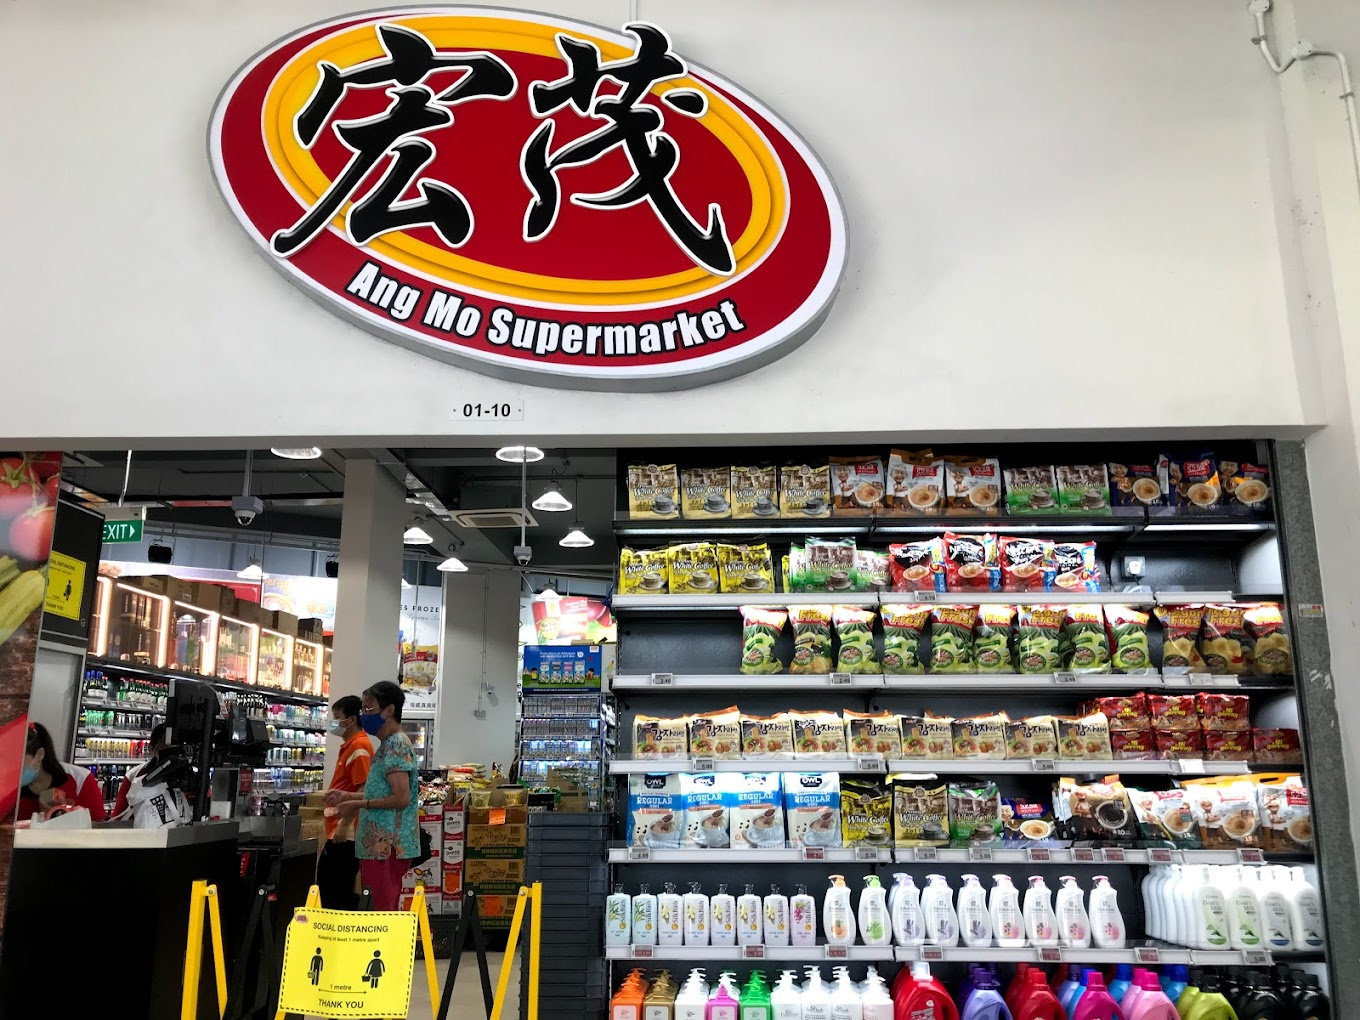 ang mo supermarket